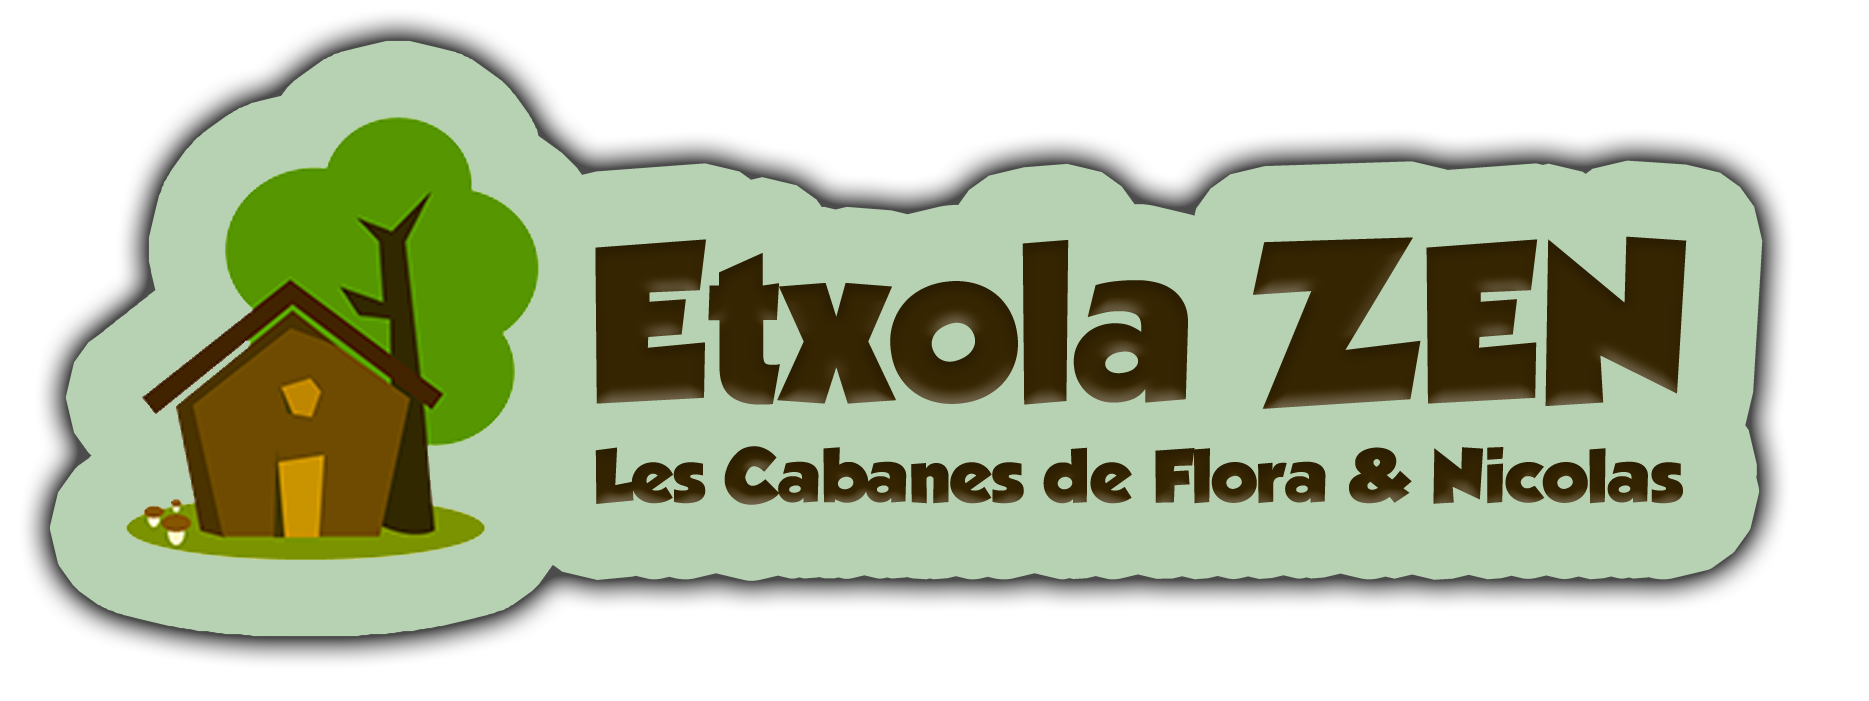 Sponsor Etxola Zen